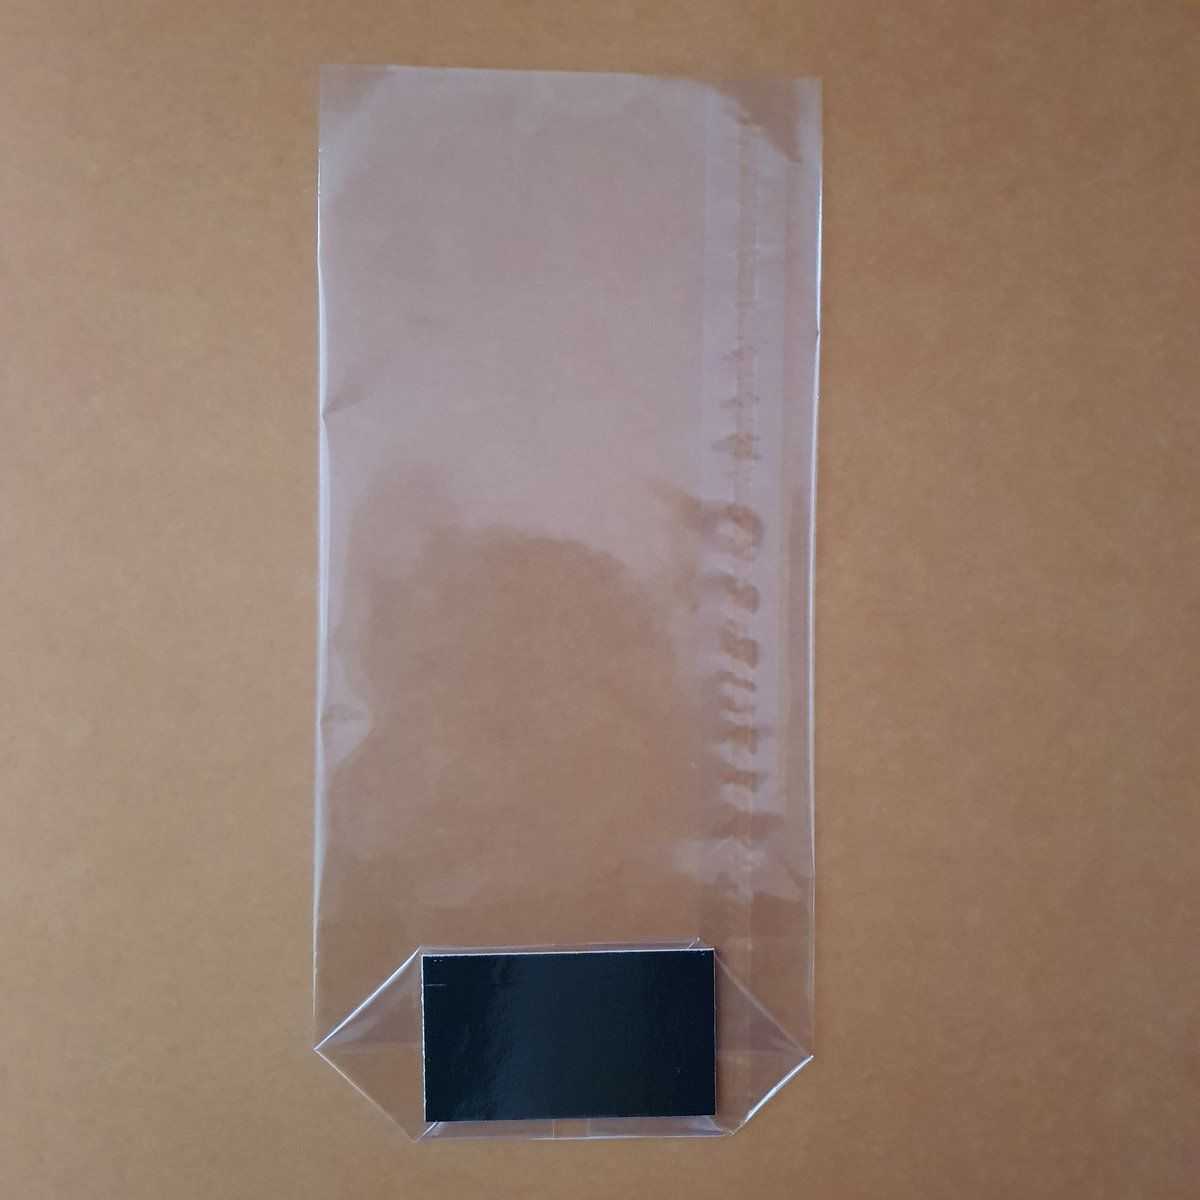 Grand sachet transparent avec fond en carton, convient au contact